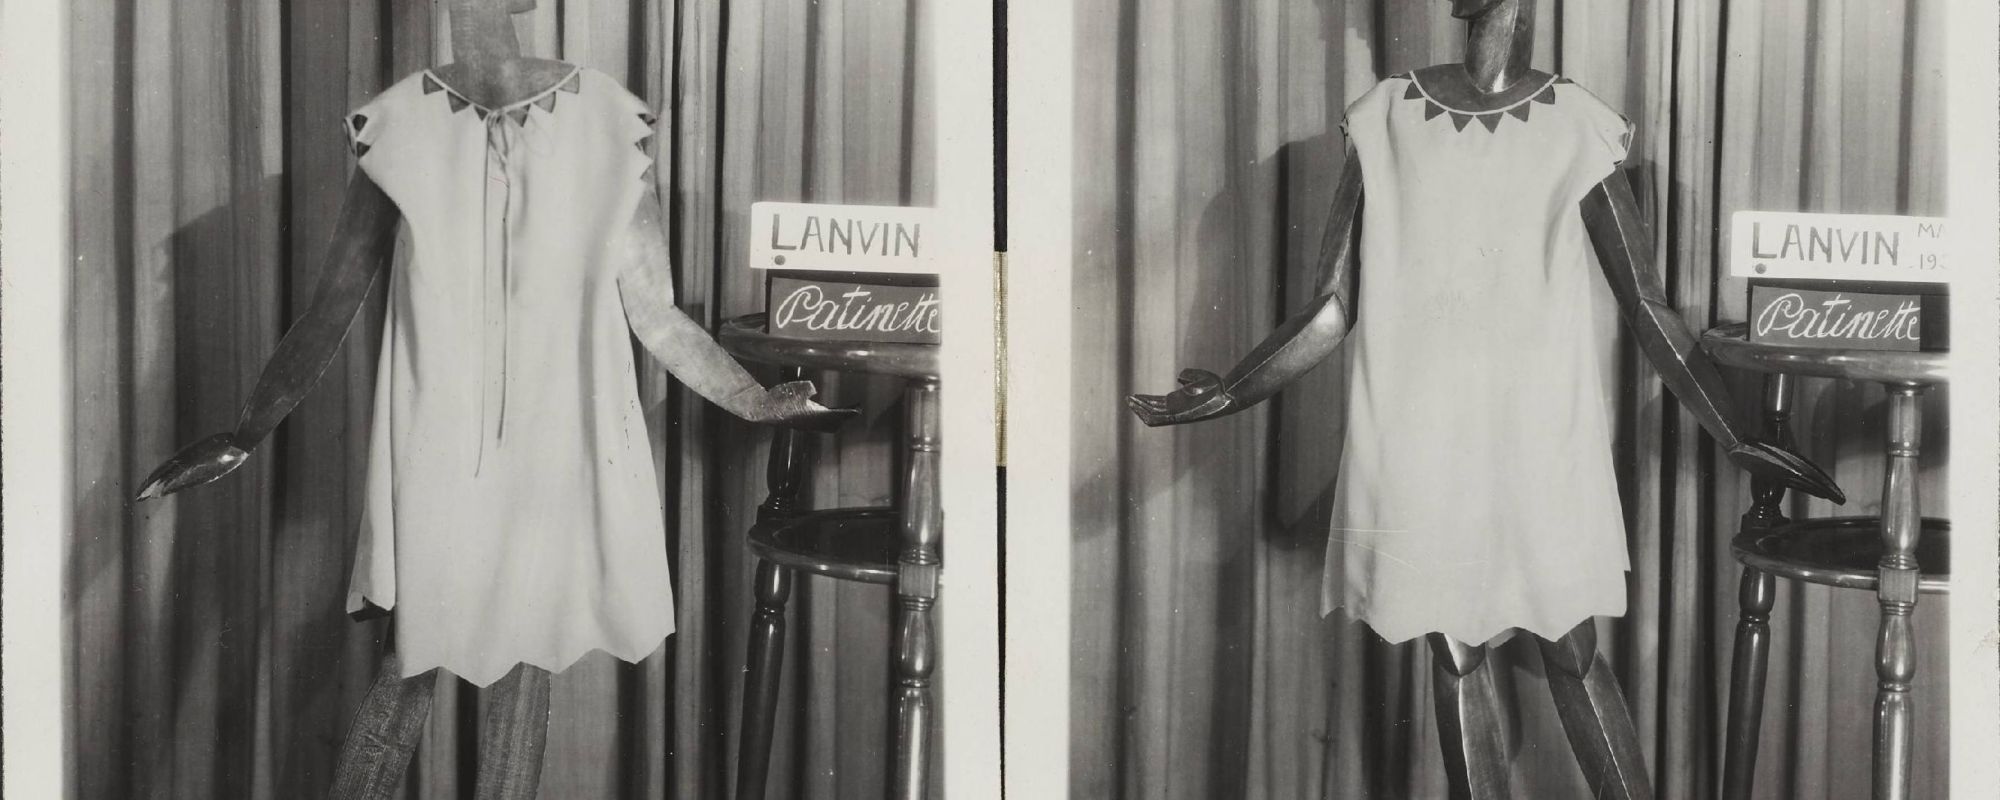 Modèle « Patinette » (robe d’enfant), déposé par Jeanne Lanvin, le 12 mars 1929, sous le n°11806 auprès du greffe des tissus du Conseil de prud’hommes de la Seine. Archives de Paris, D12U10 665.